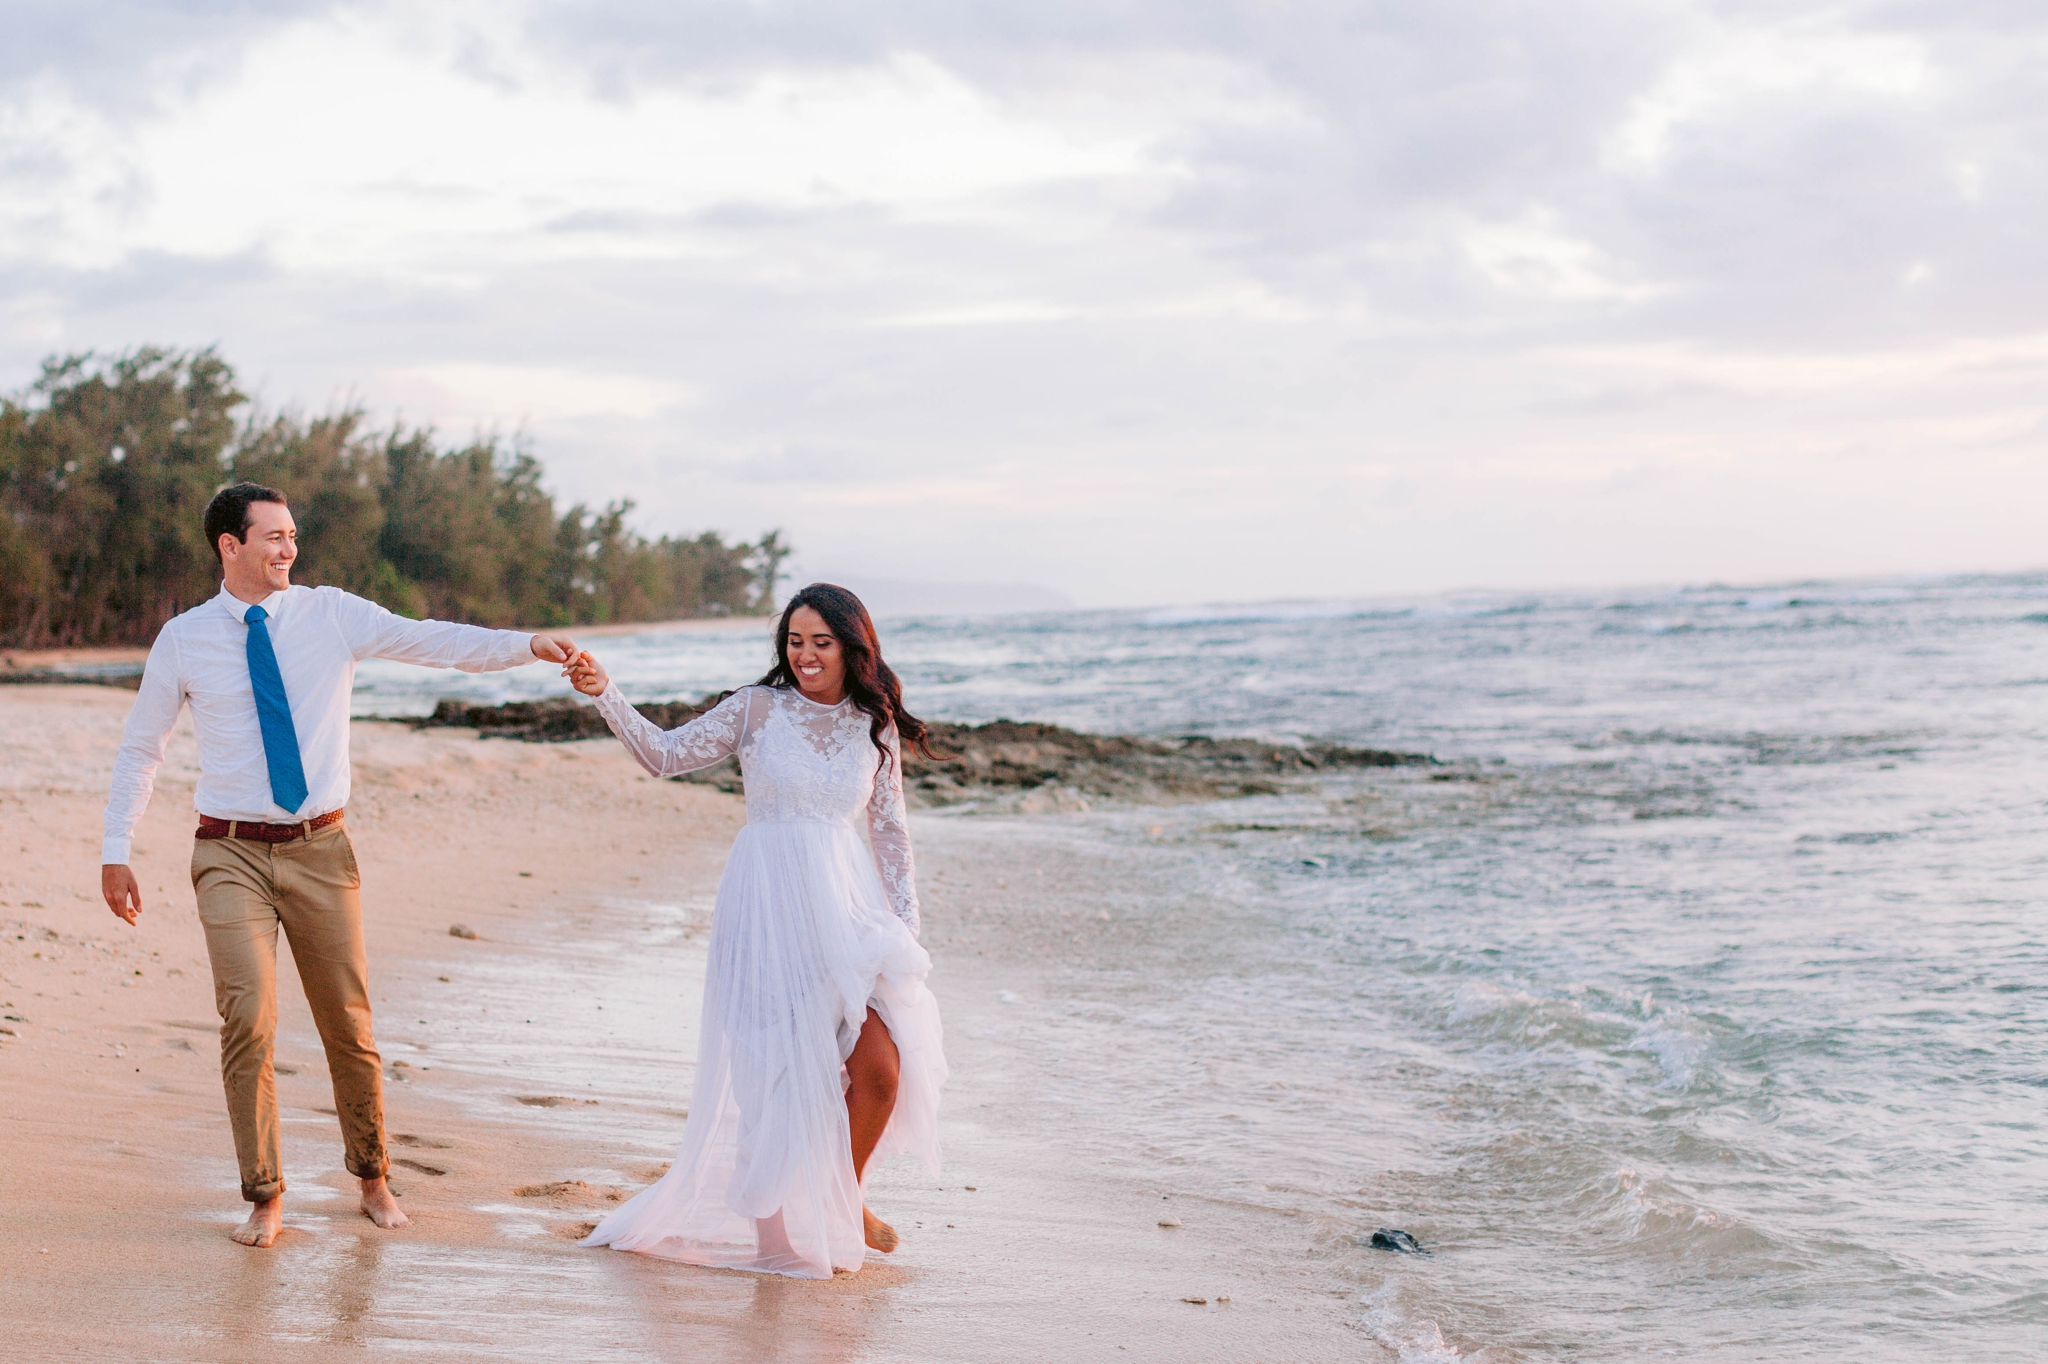  Bride and Groom walking on the beach - Wedding Portraits at Sunset in Hawaii - Ana + Elijah - Wedding at Loulu Palm in Haleiwa, HI - Oahu Hawaii Wedding Photographer - #hawaiiweddingphotographer #oahuweddings #hawaiiweddings 